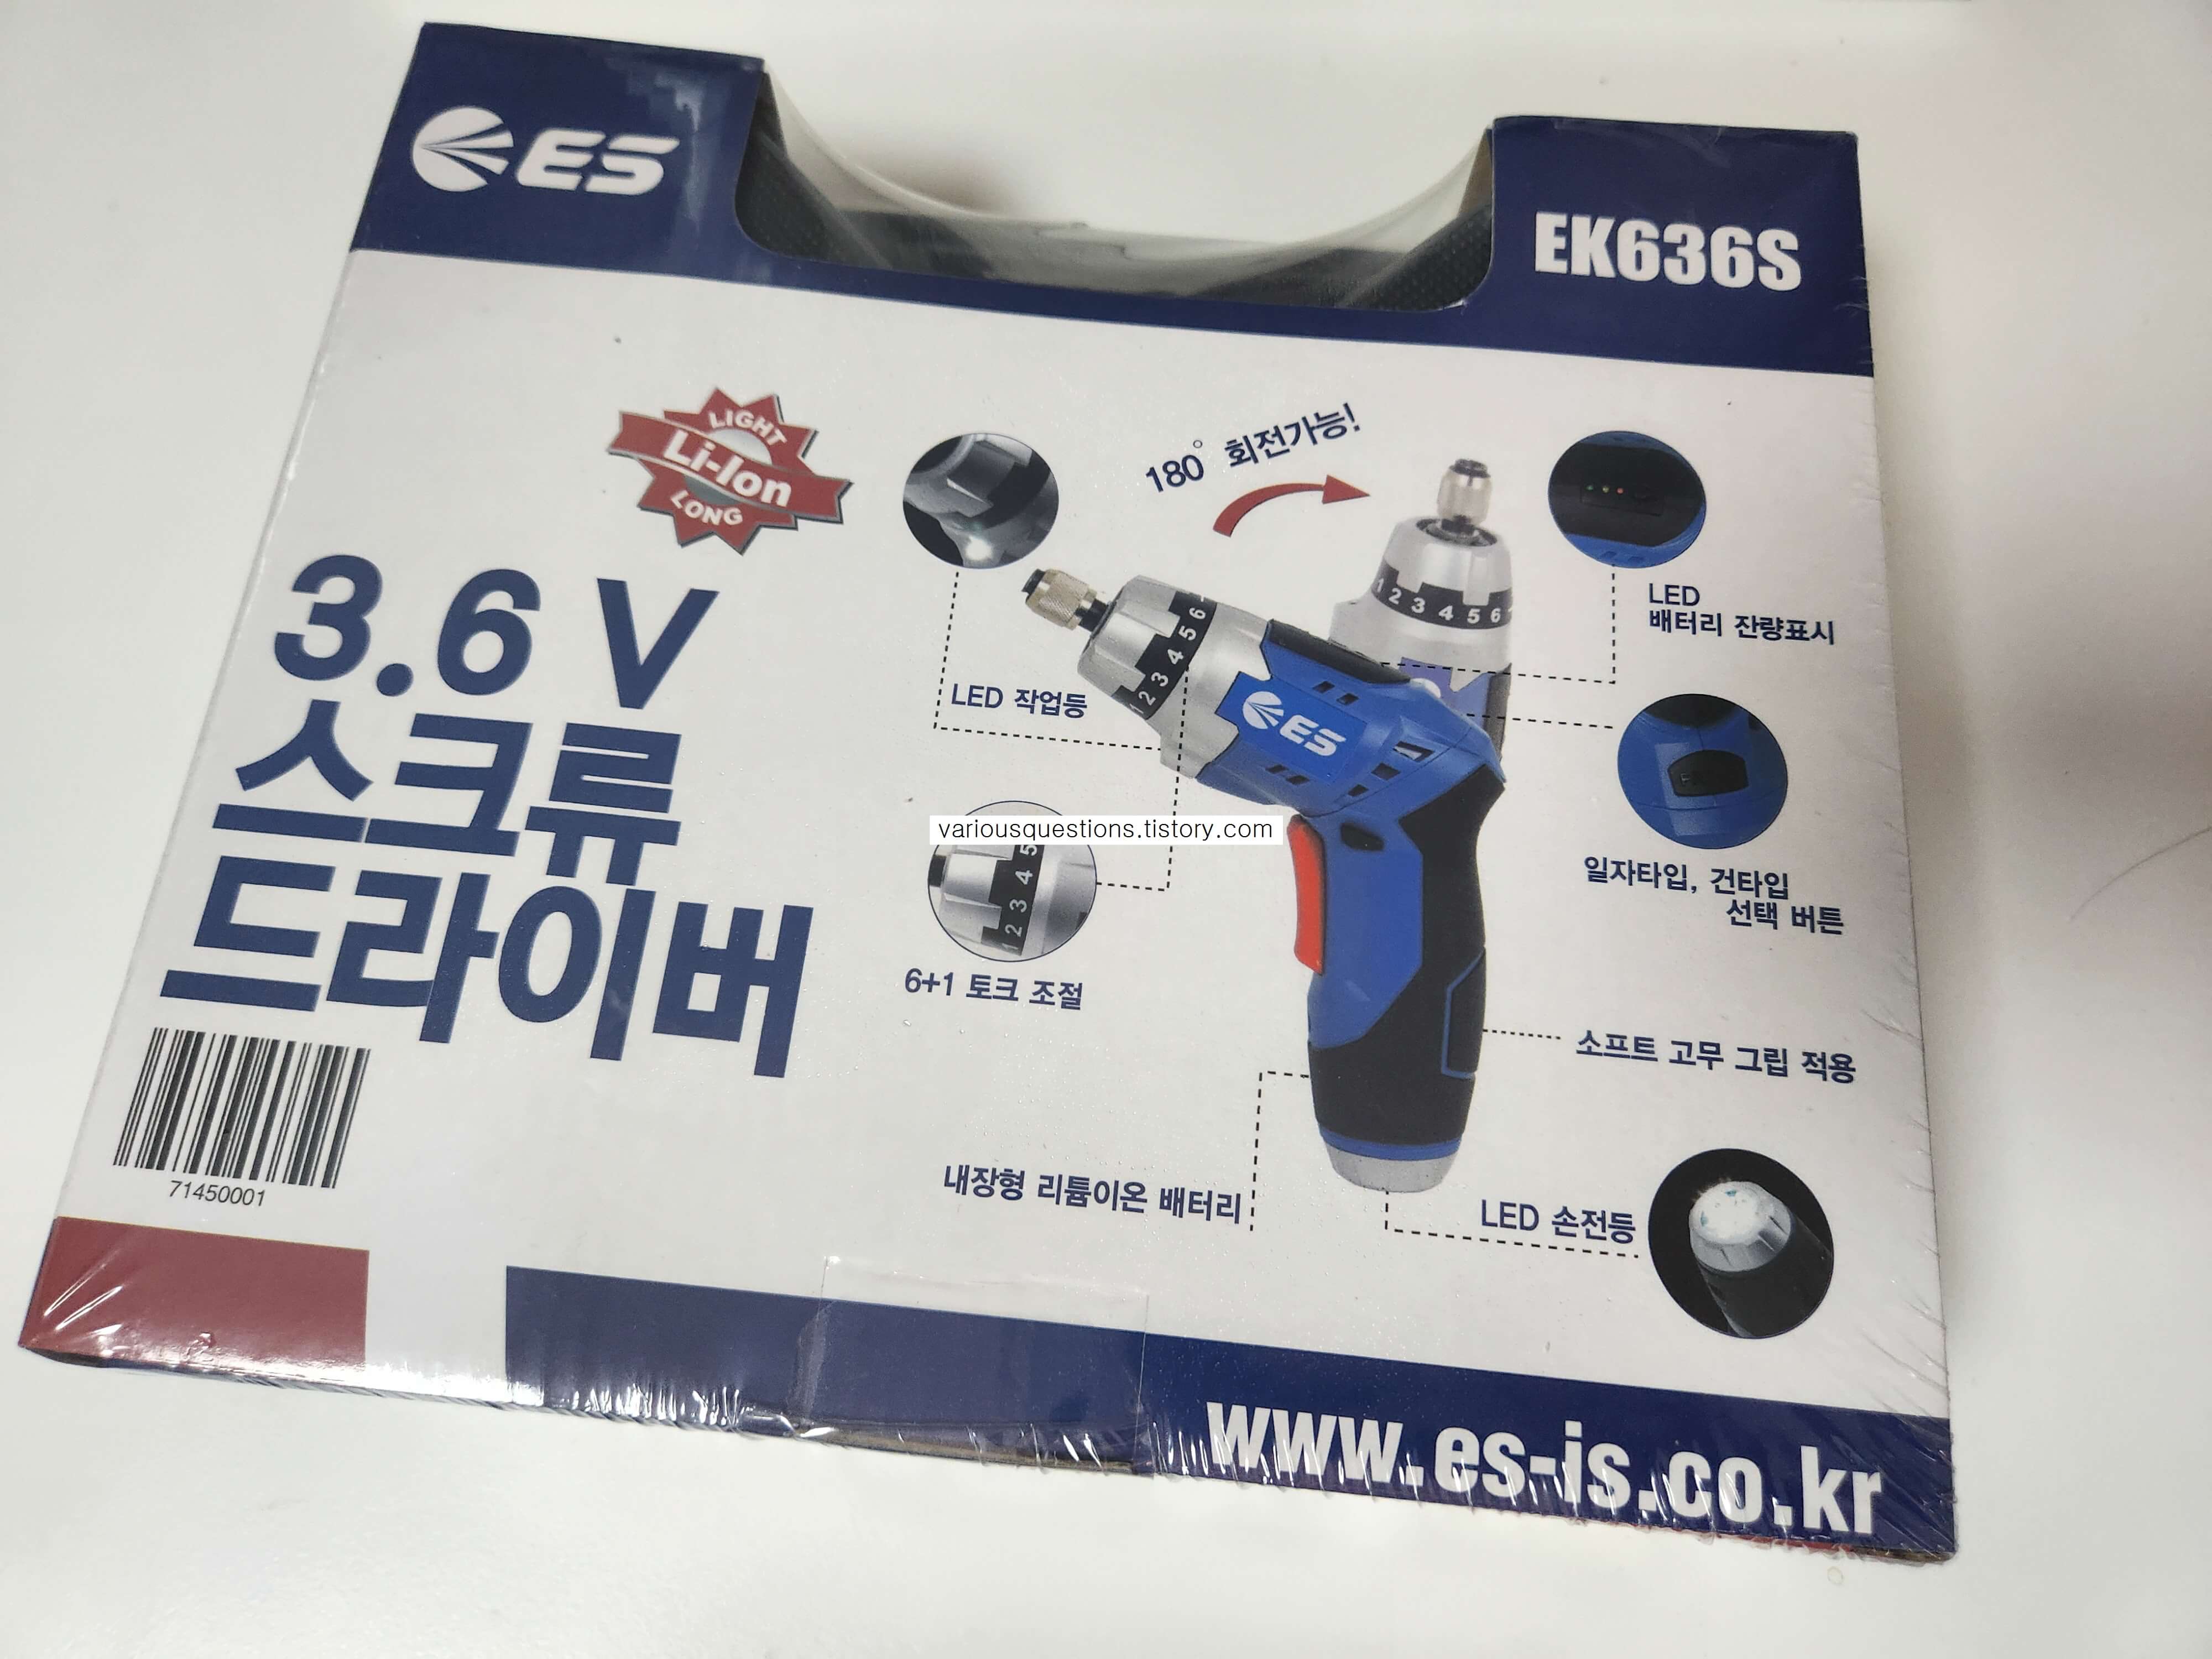 ek636s 포장